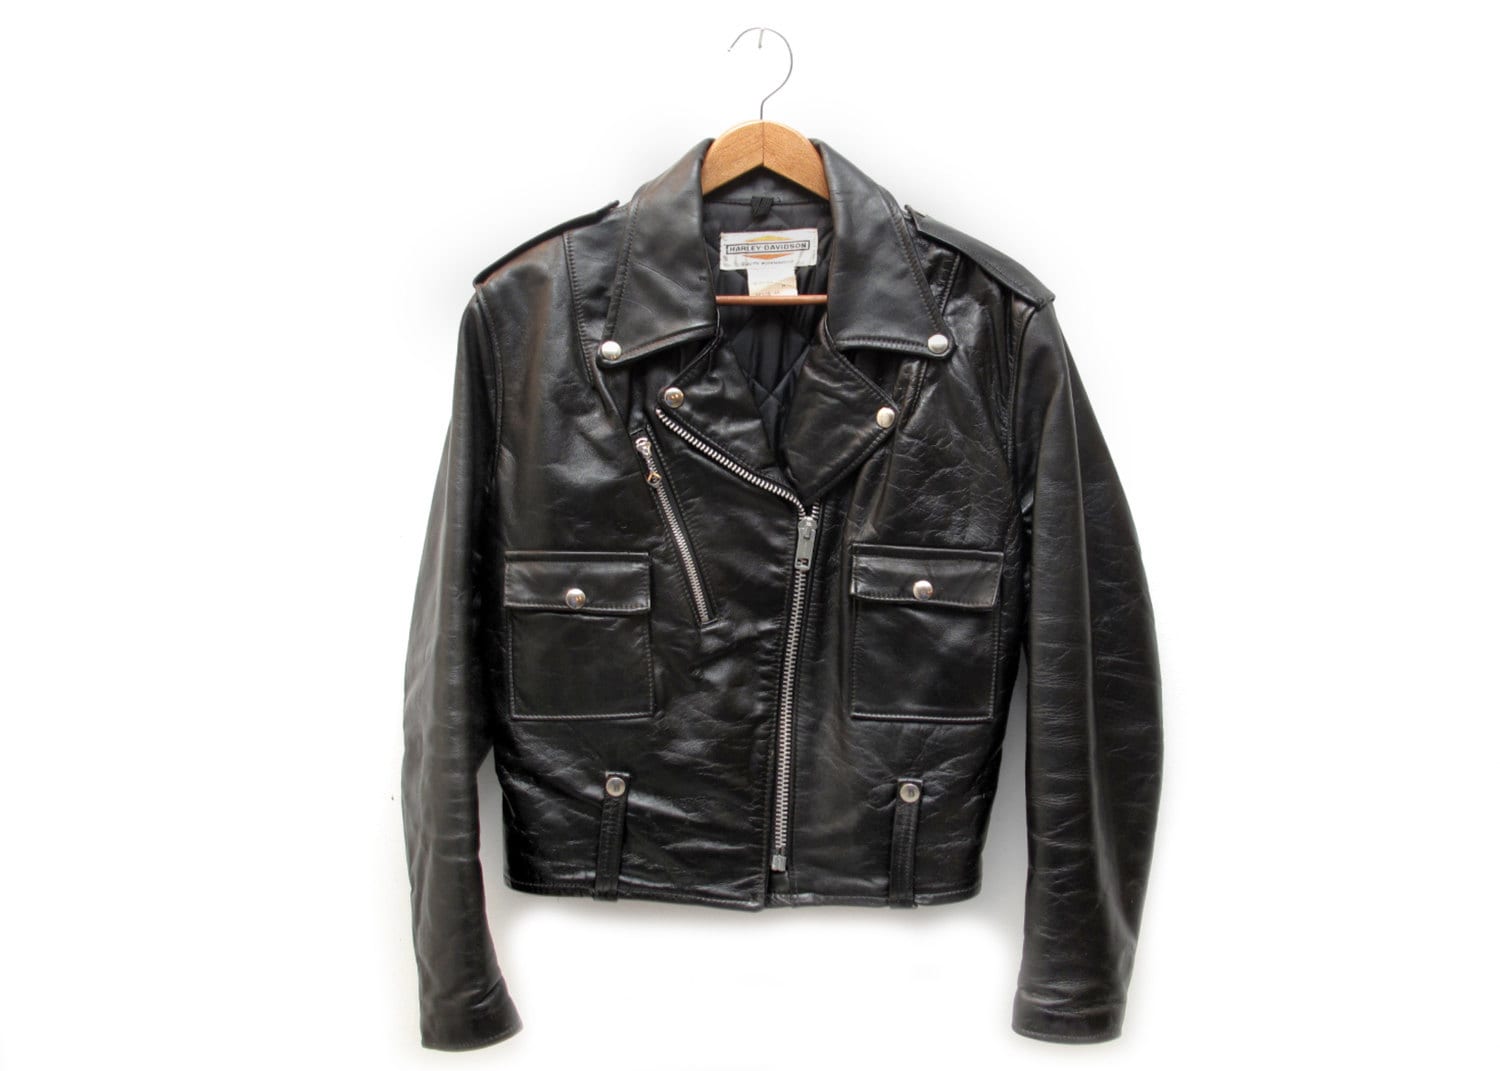 SALE Vintage Harley Davidson Black Leather Biker Jacket